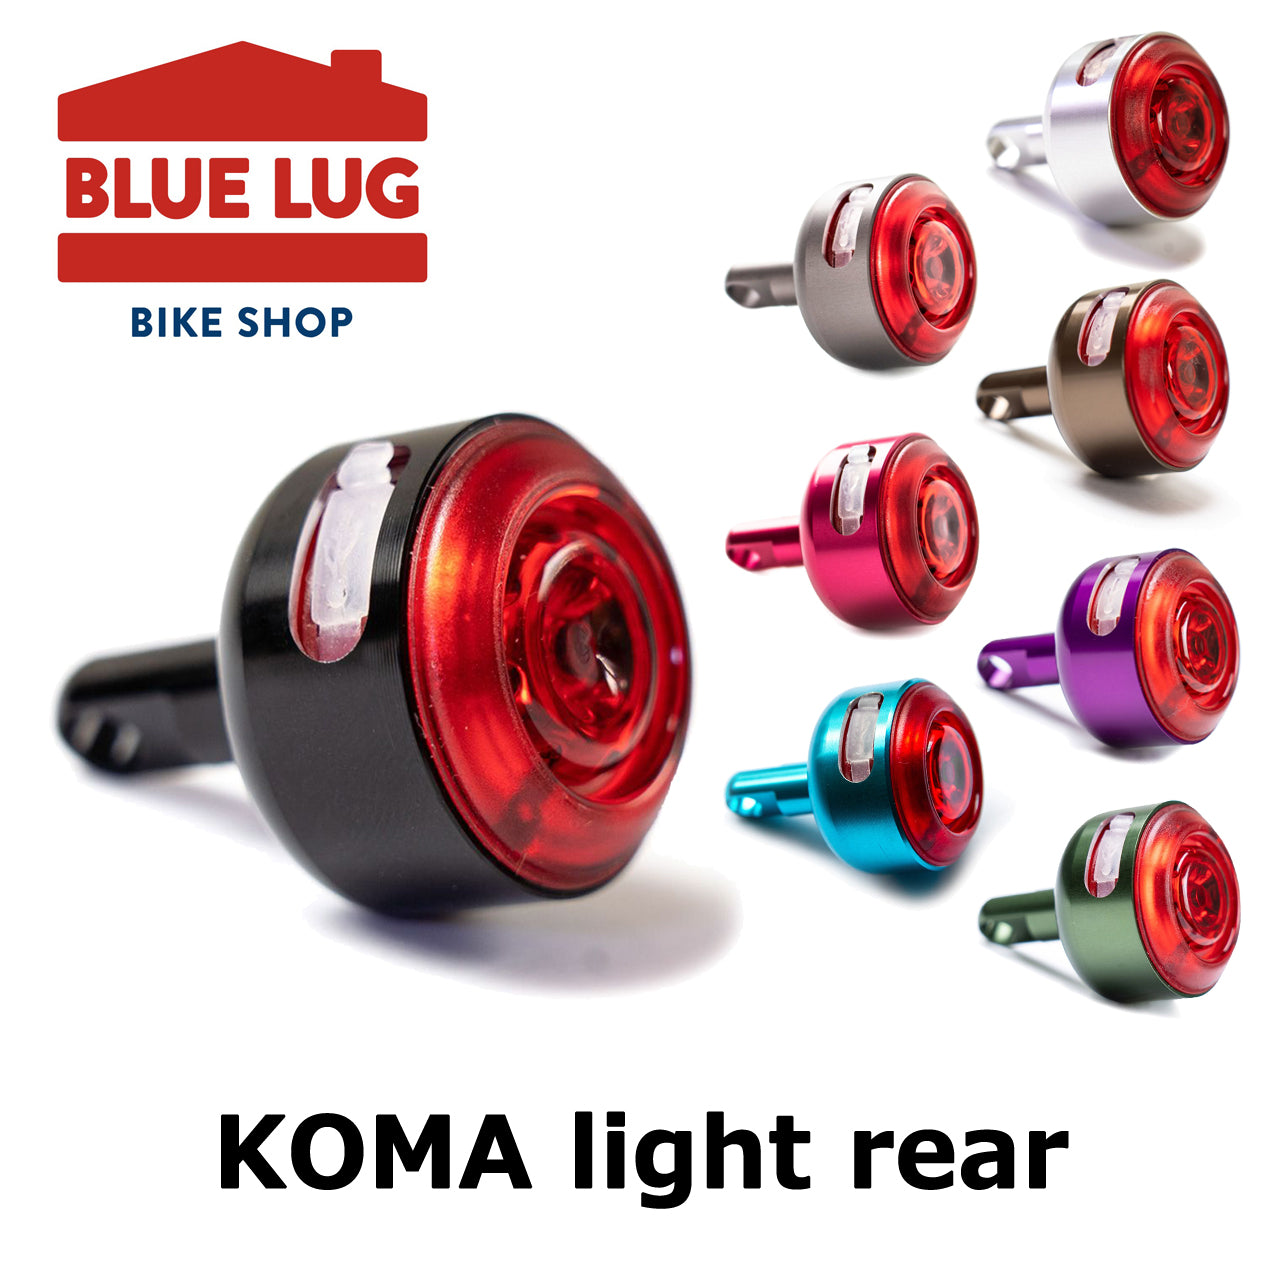 KOMA light rear（コマ ライト リア）